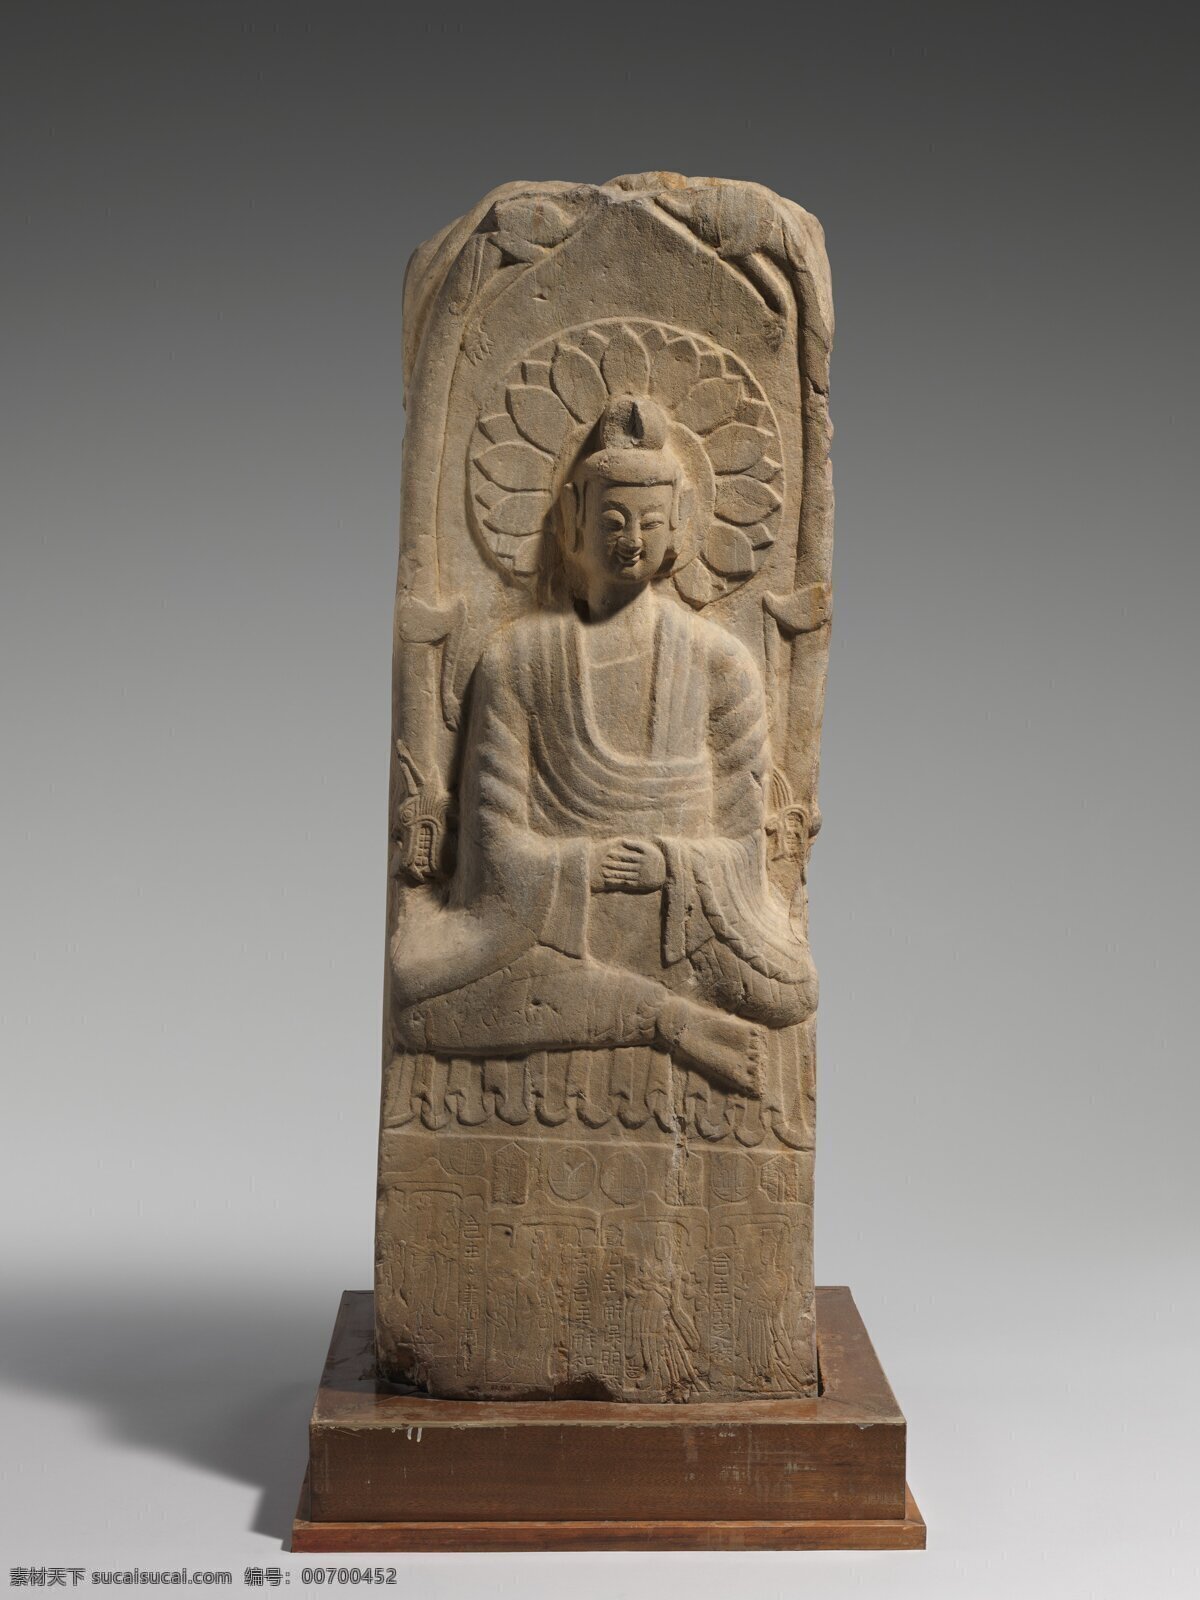 石雕佛像 石雕 佛像 佛 佛教 北魏 传统 石像 华光 传统文化 文化艺术